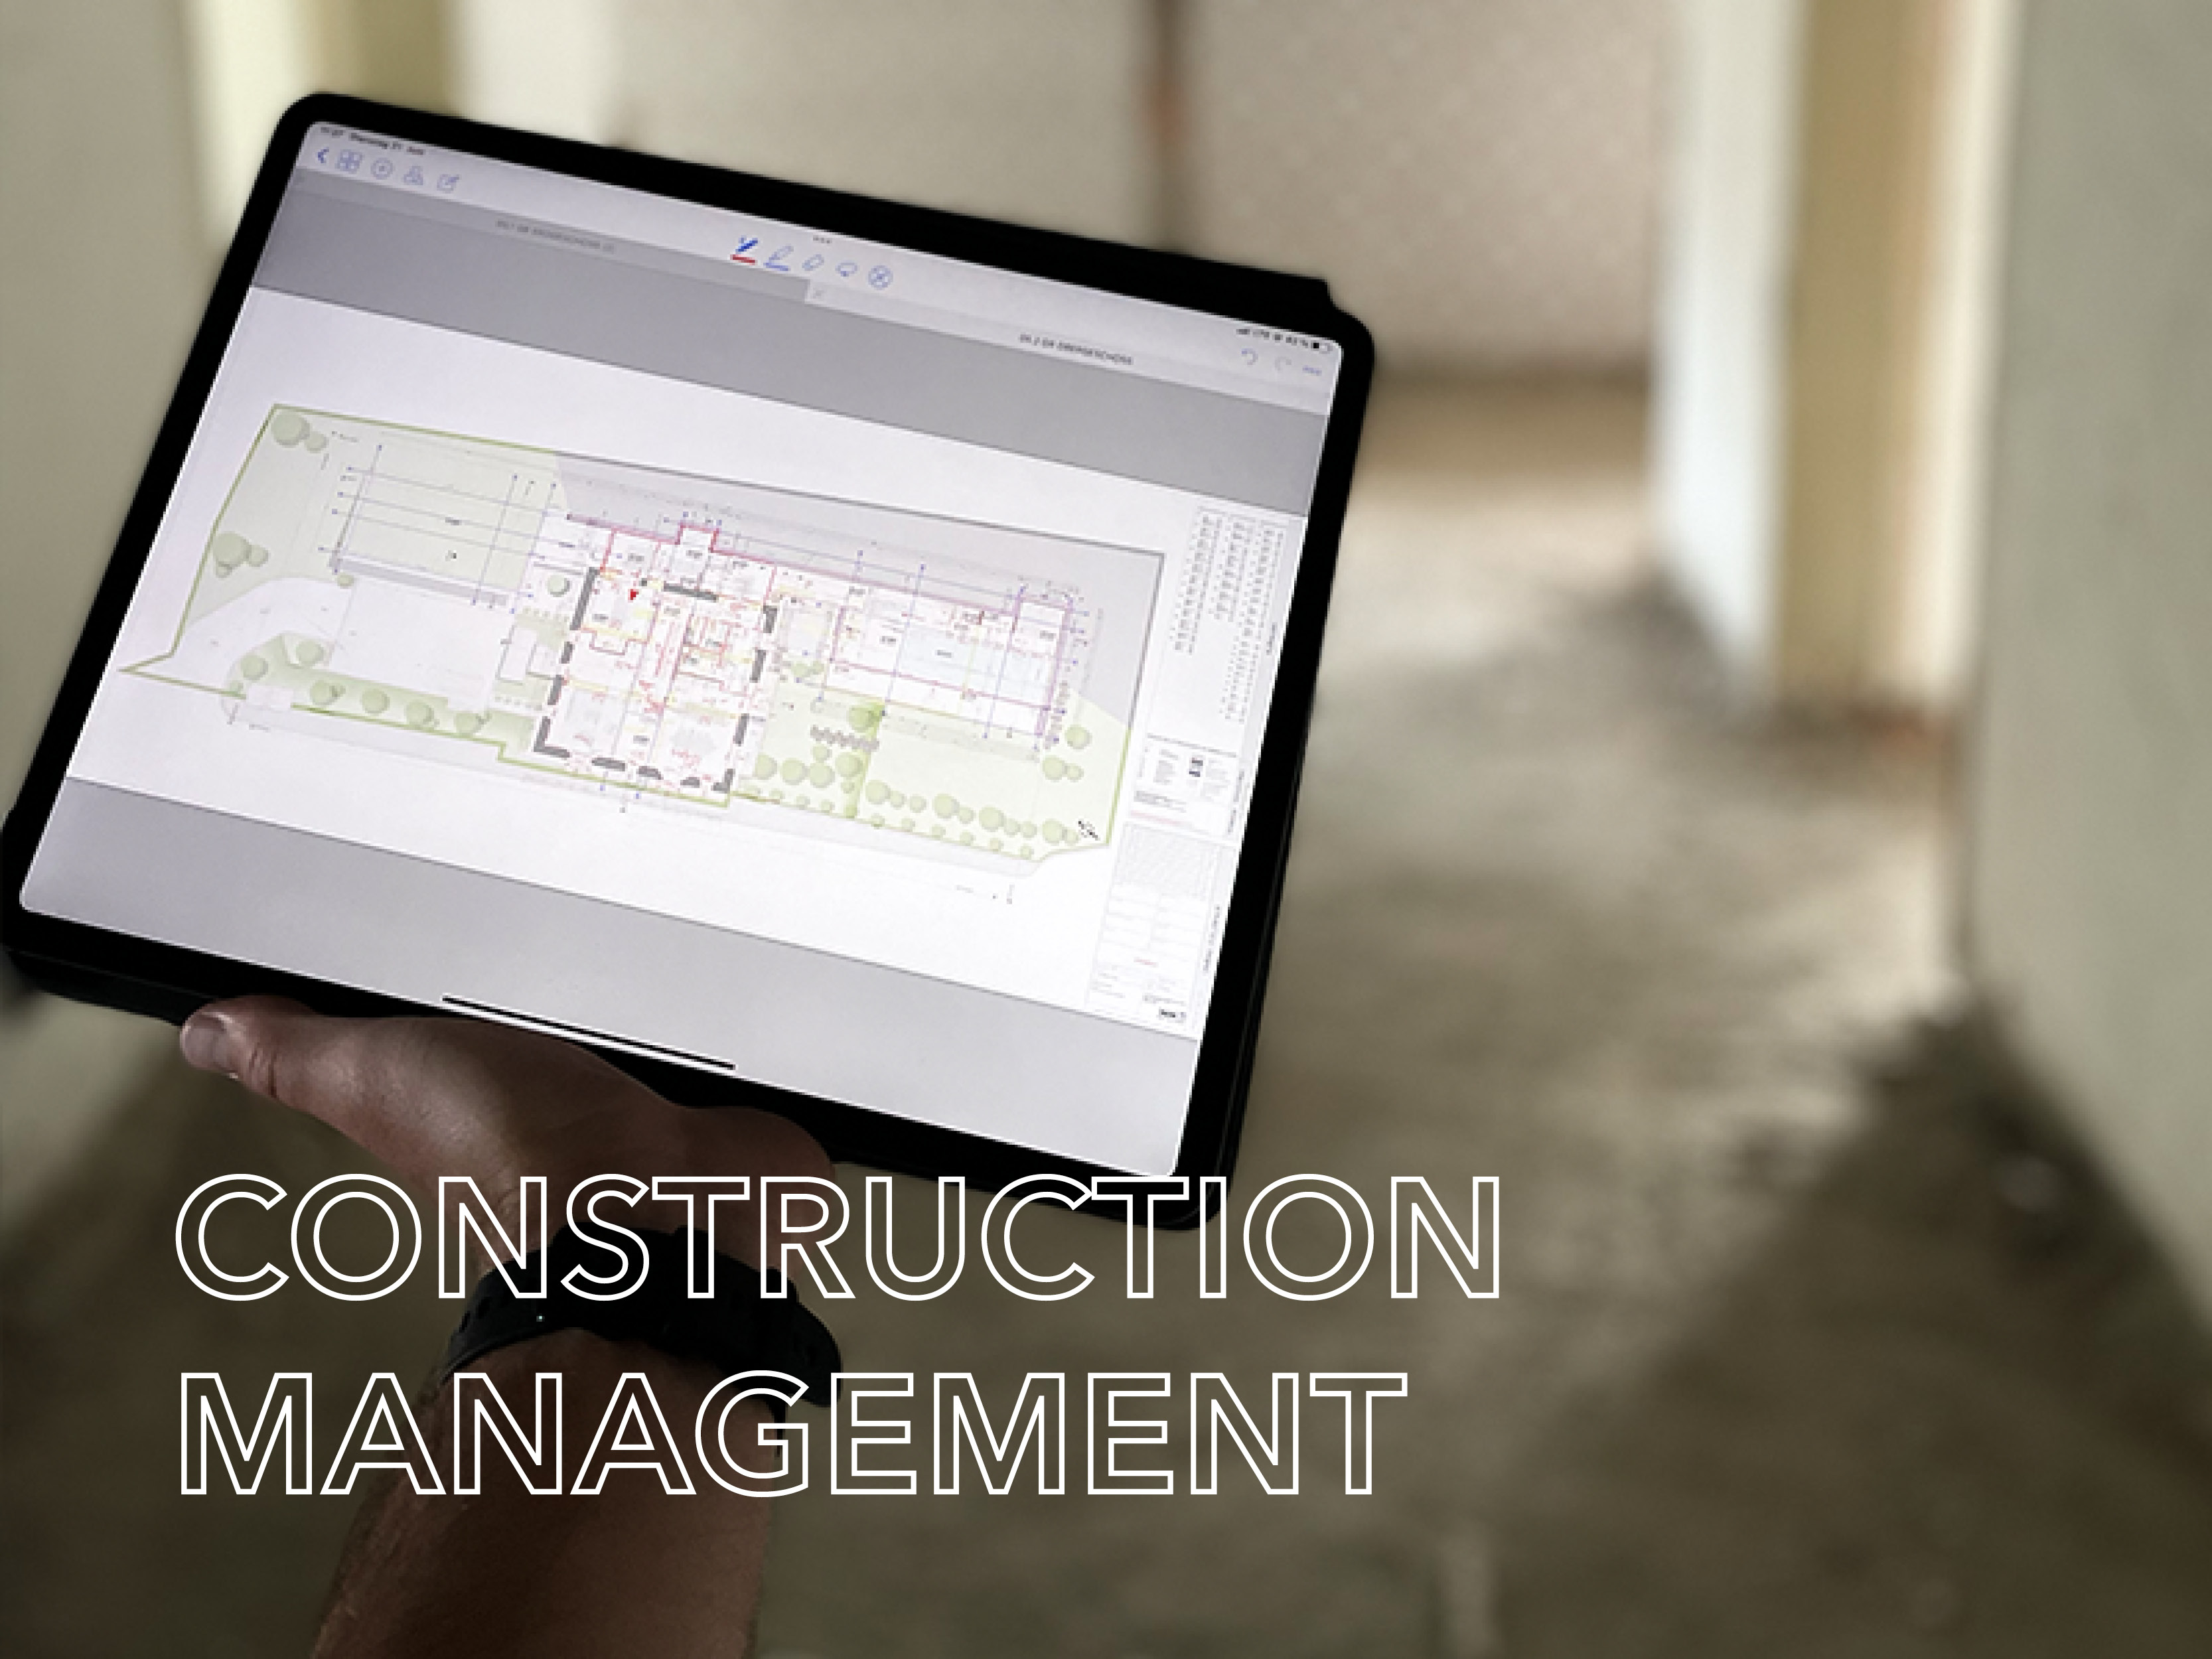 Construction Management Service